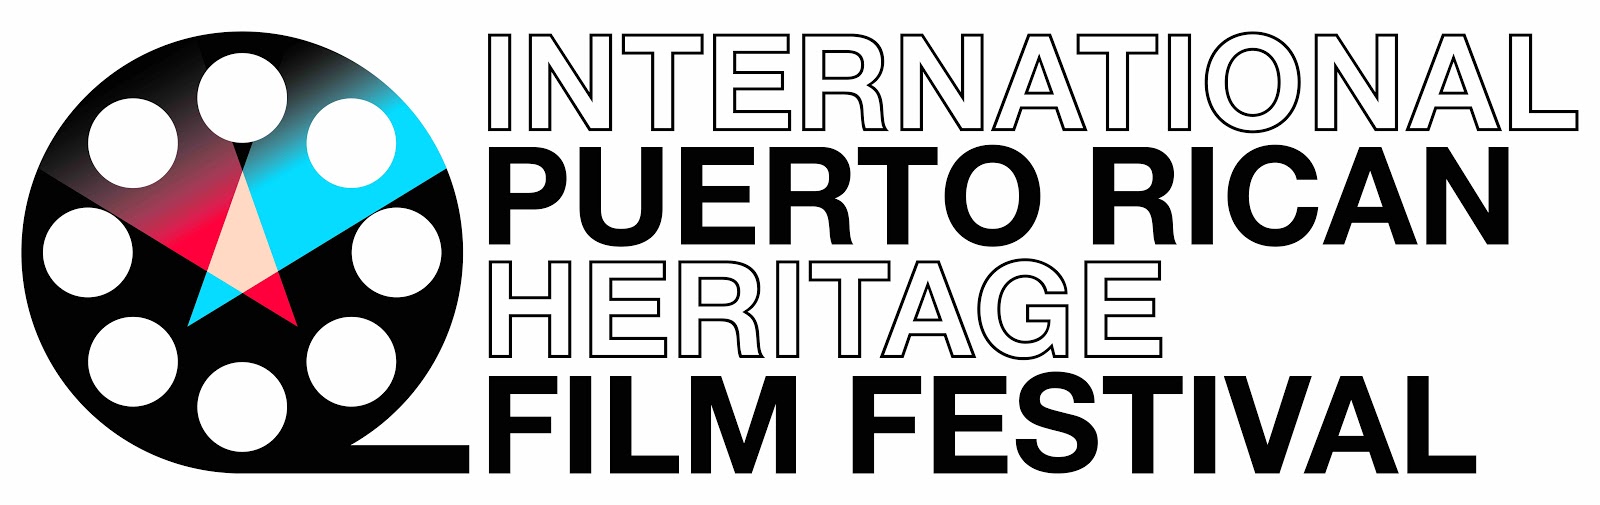 国际波多黎各传统电影节在胶片卷轴图形旁边用黑色粗体字母书写。